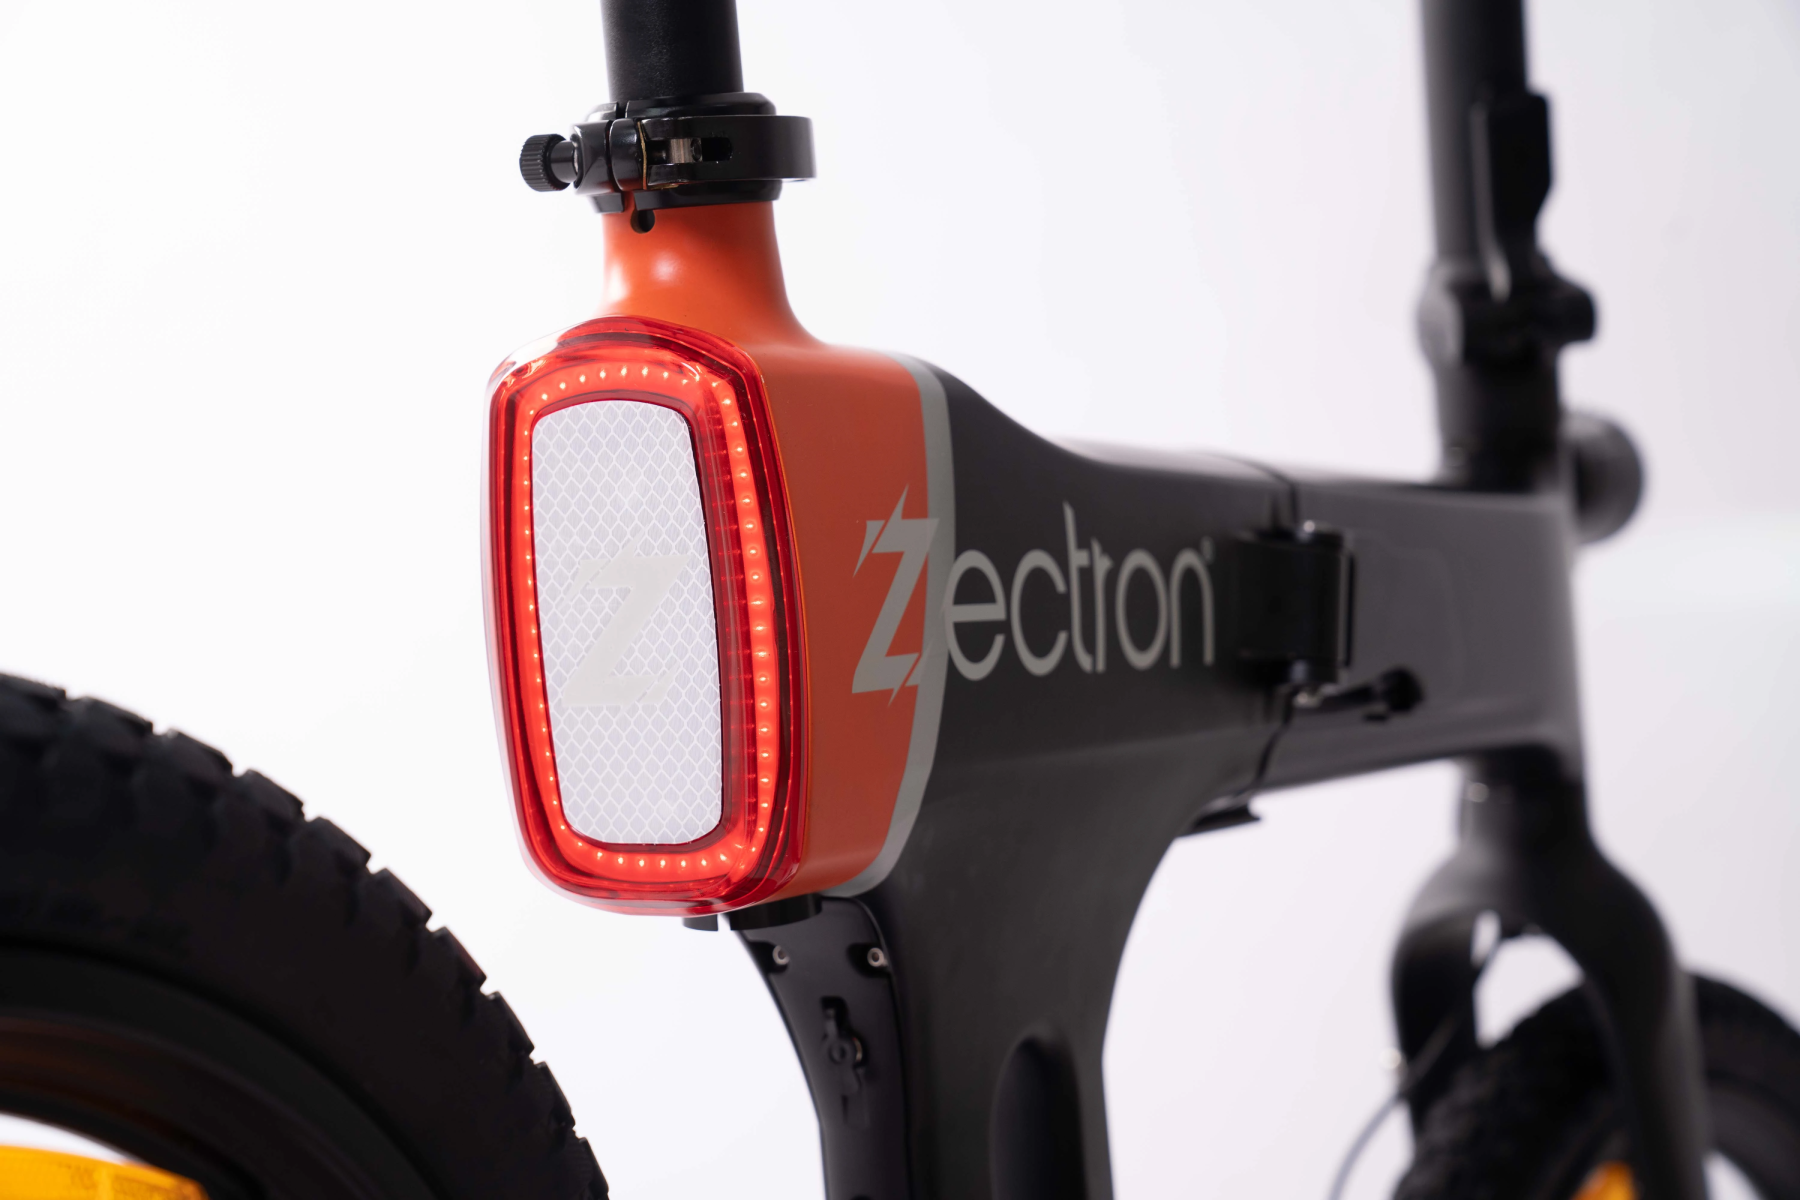 Zectron E-bike